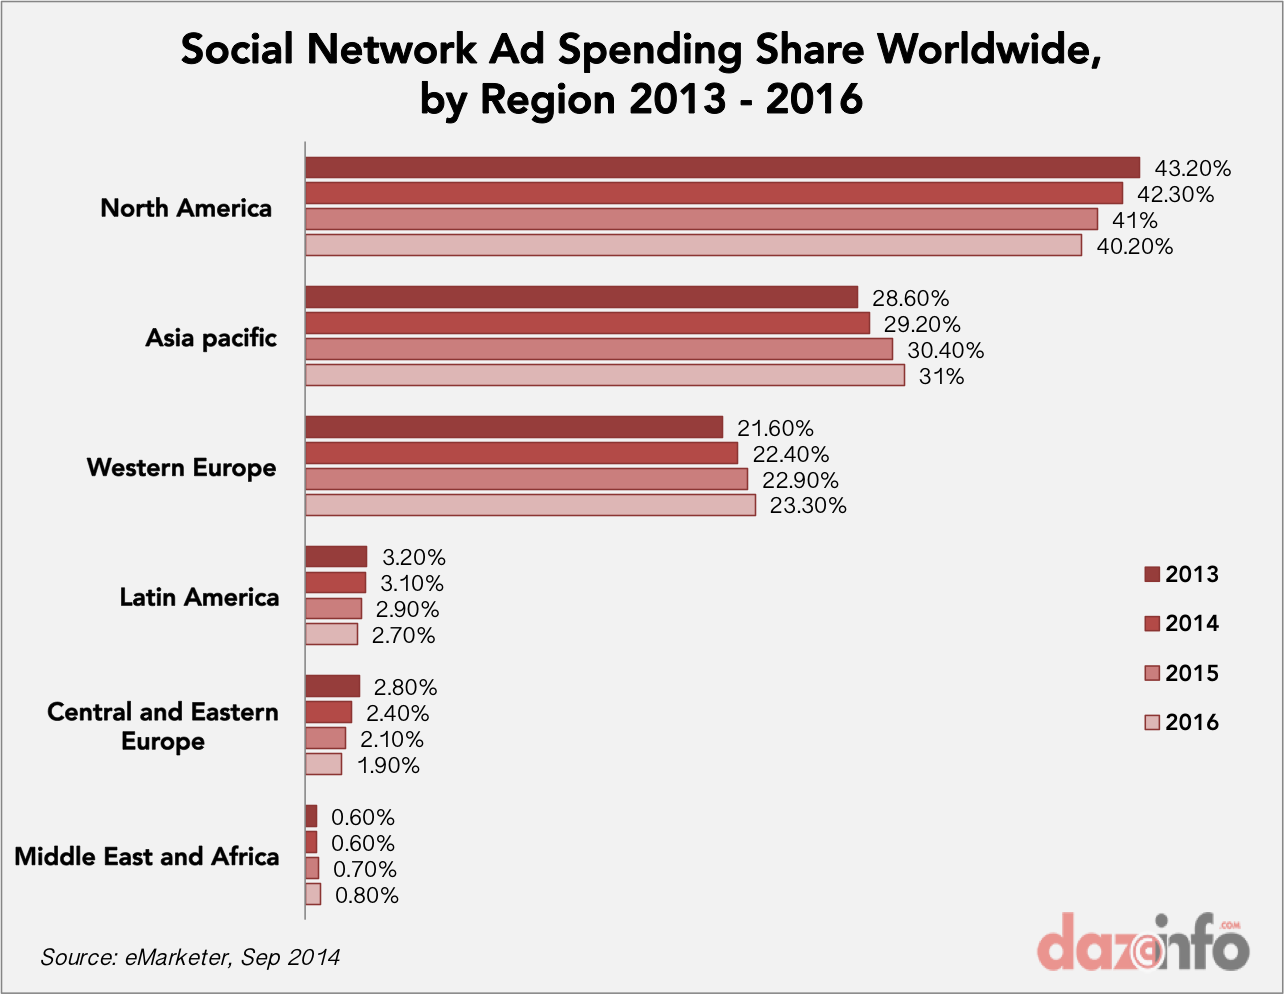 Worldwide Social Network Ad Spending share 2013 - 2016